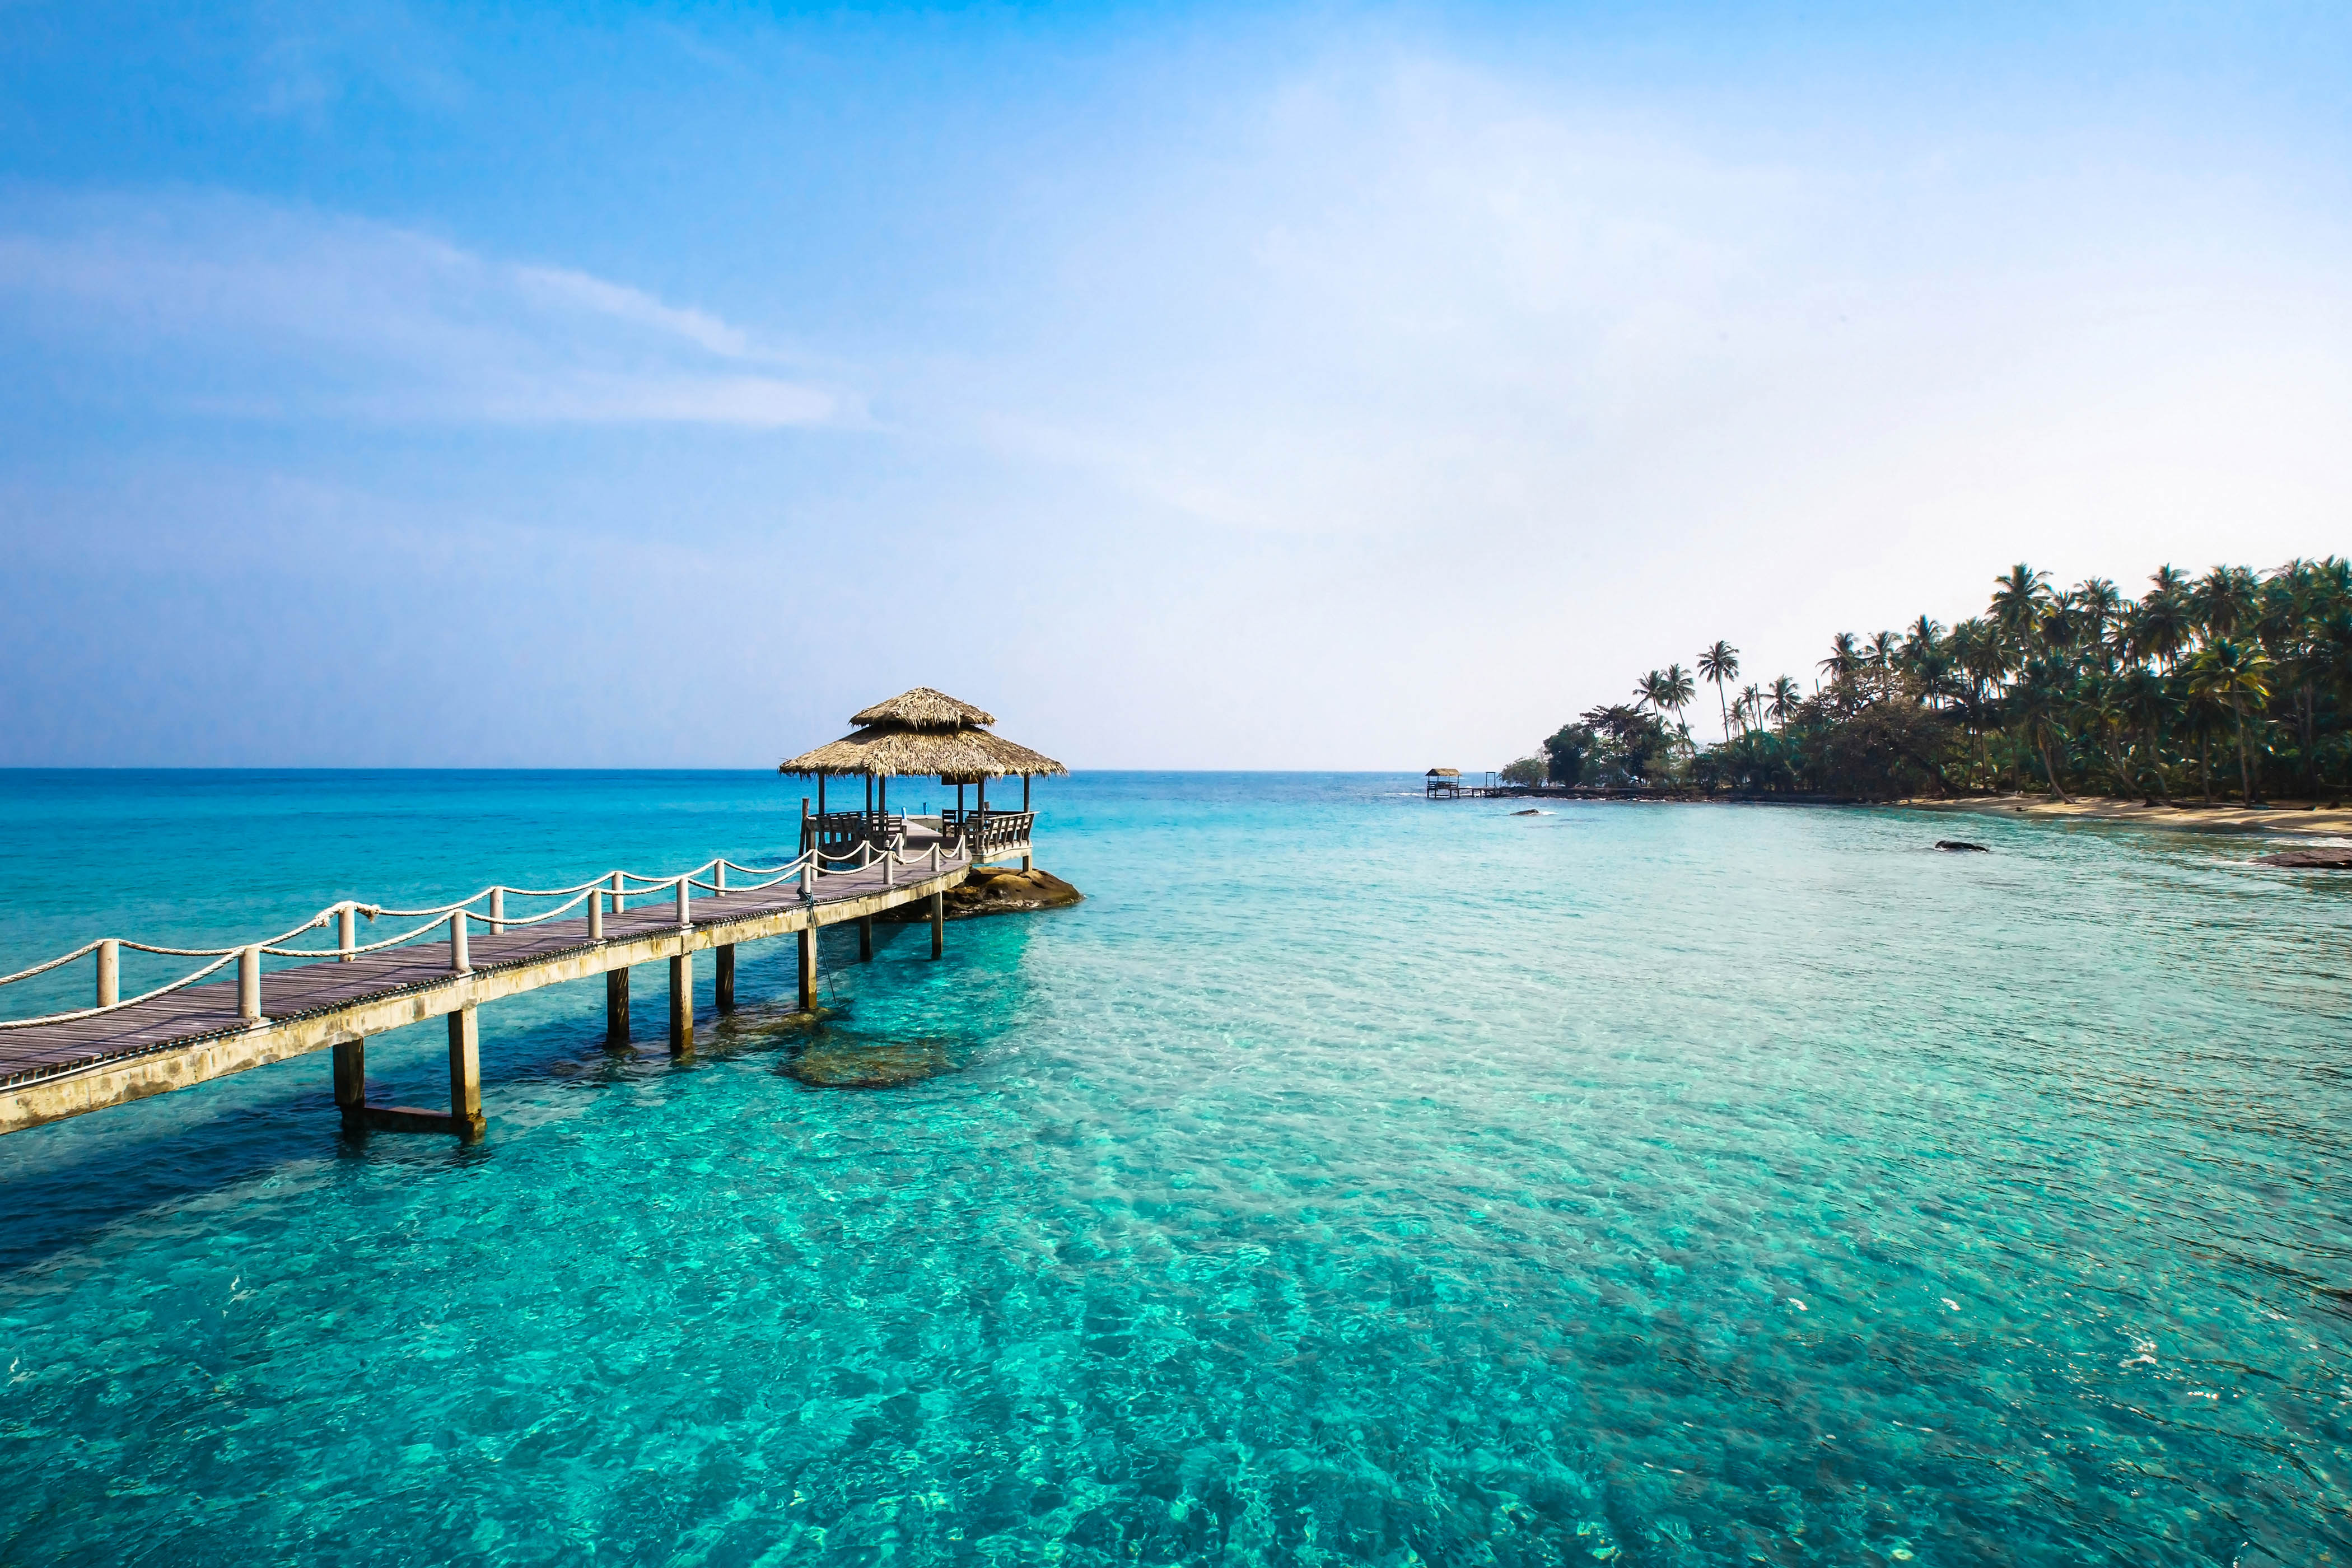 Oferta a Indonesia, Bali con vuelos y hotel incluido por solo 636€